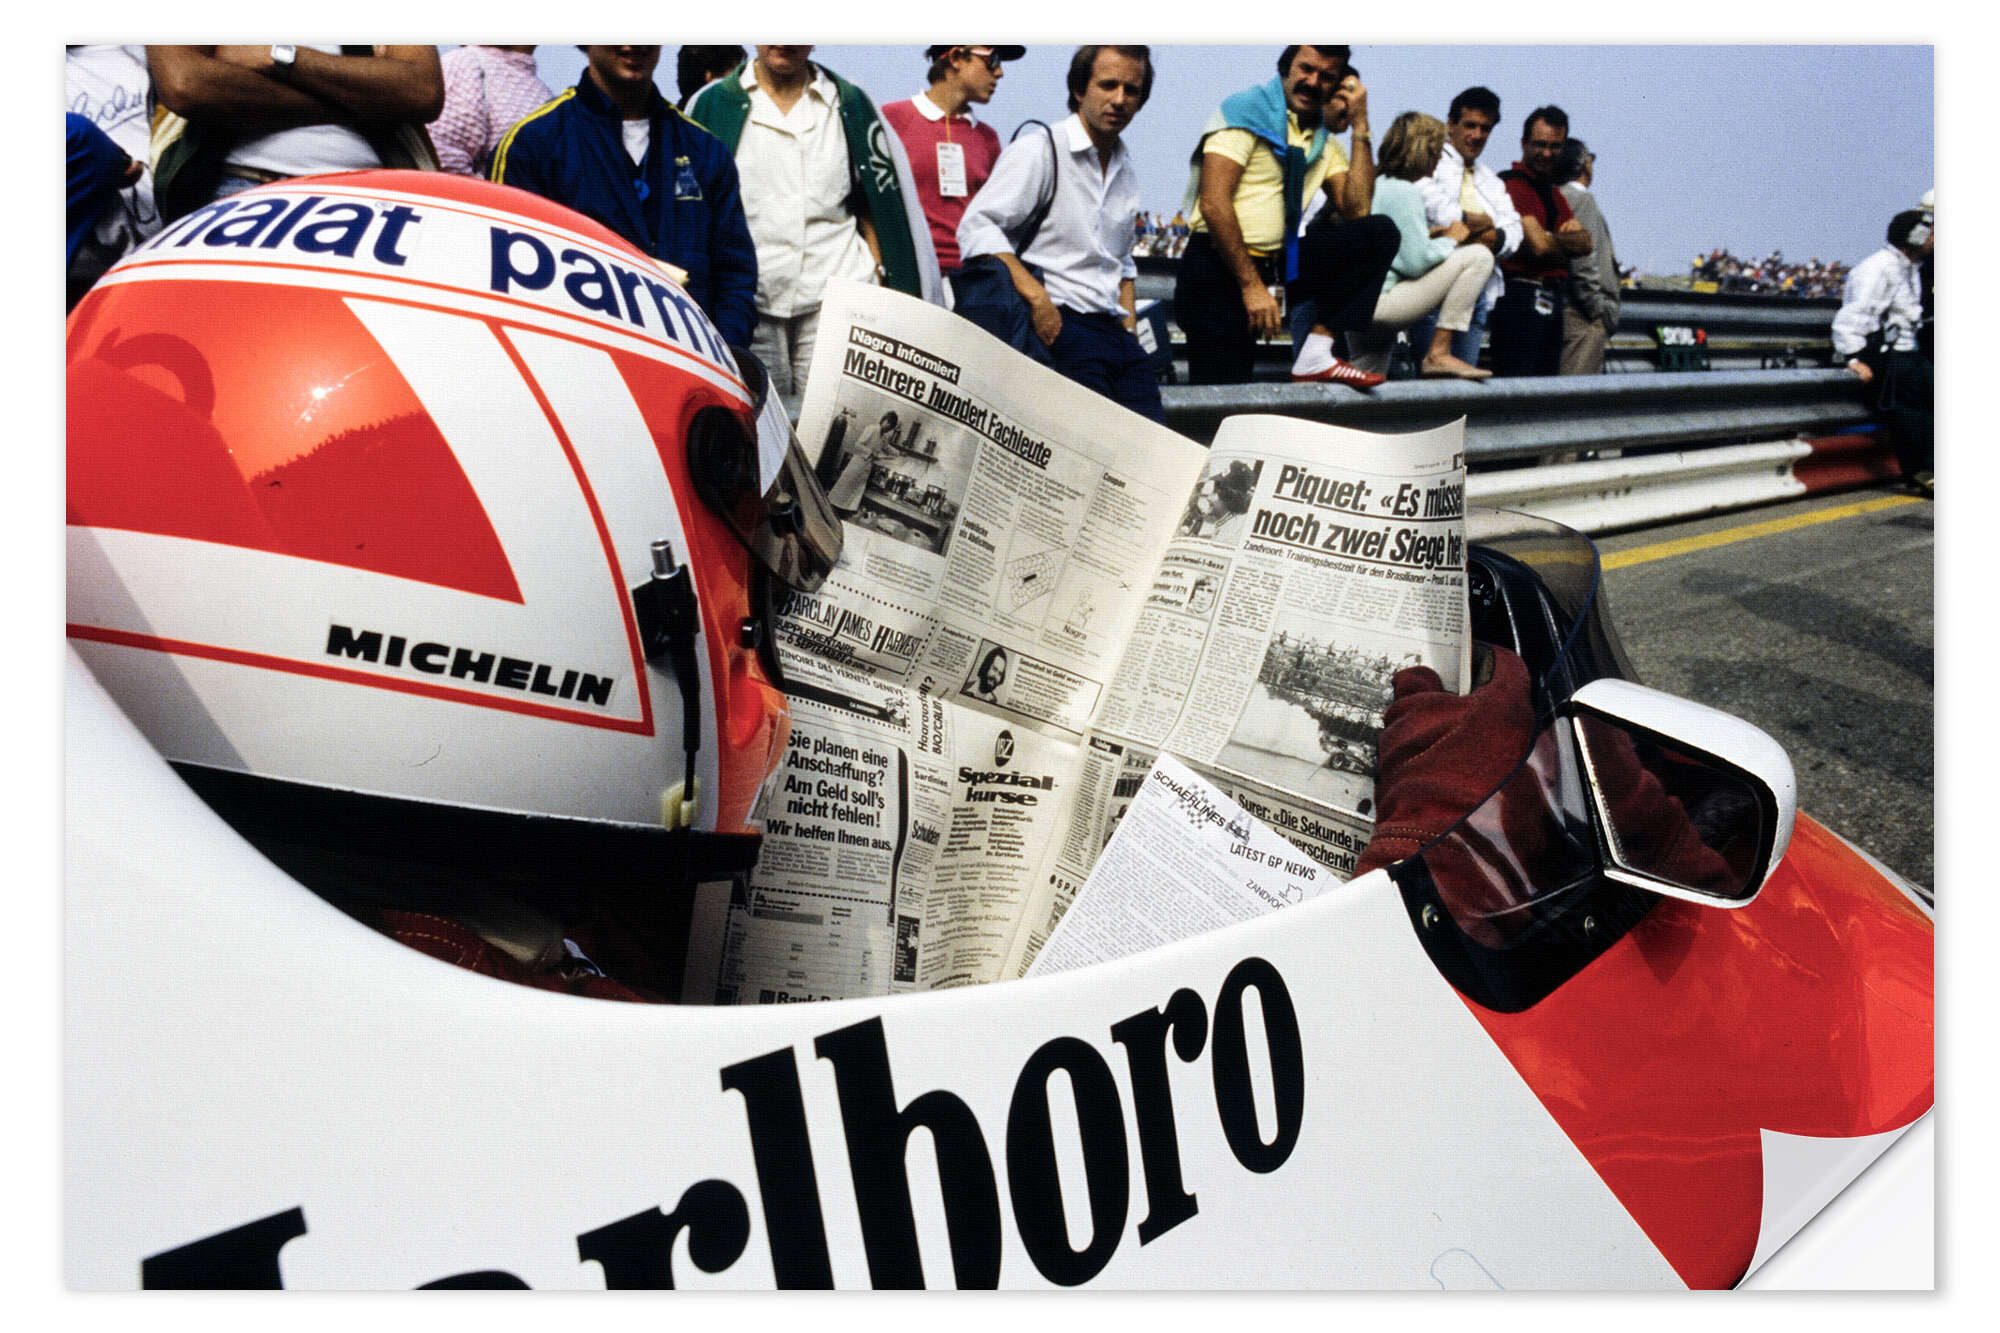 Posterlounge Wandfolie Motorsport Images, Niki Lauda mit Zeitung im Cockpit, Formel 1 Zandvoort 1984, Wohnzimmer Fotografie